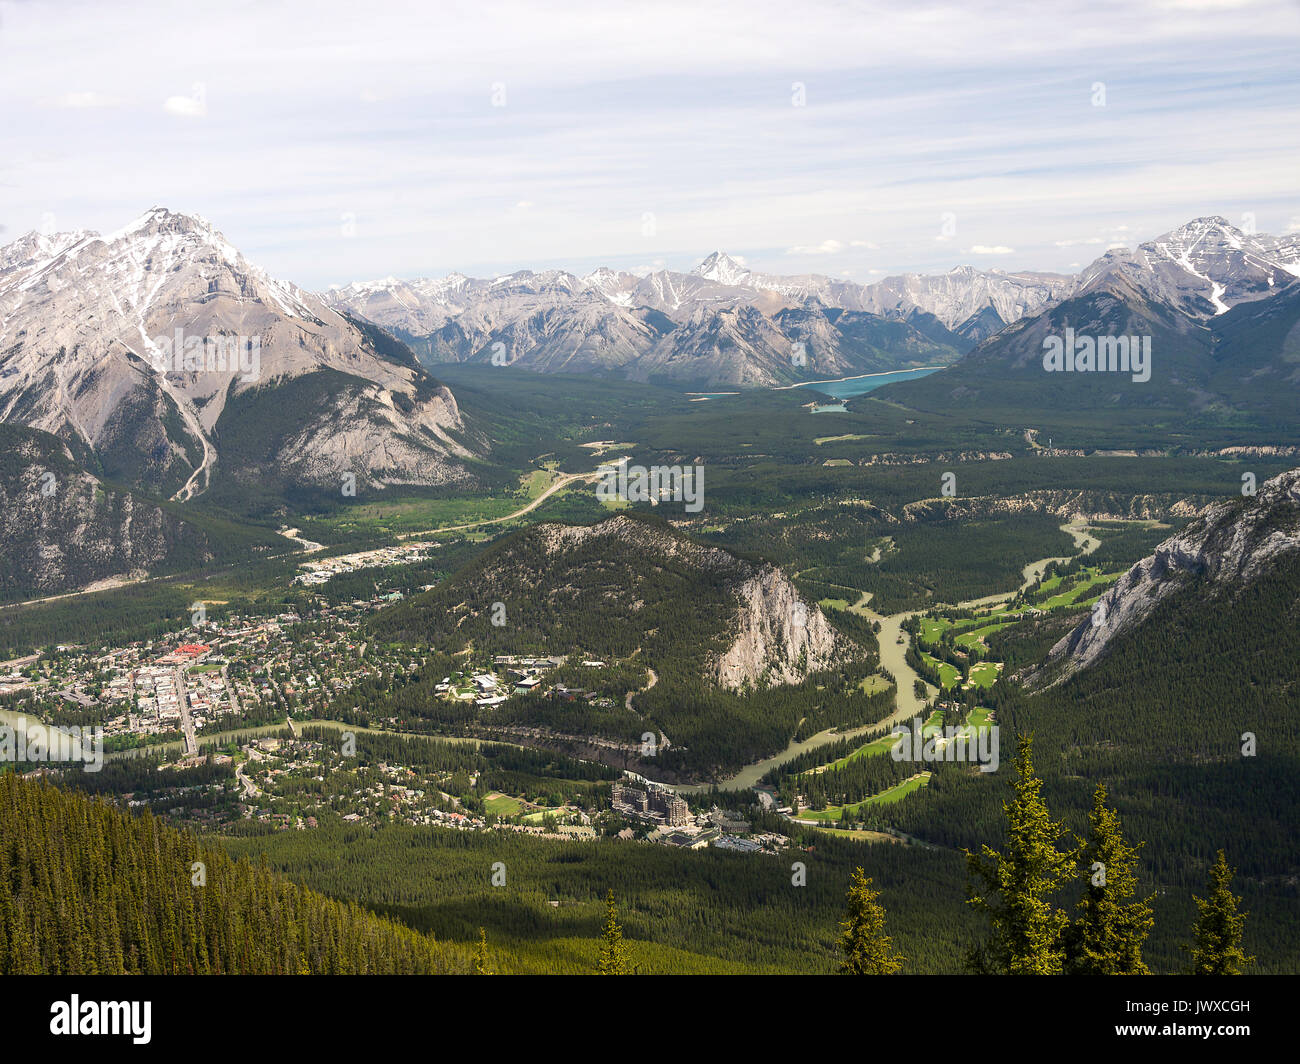 Vue aérienne de Banff depuis le haut de la Gondole dans les montagnes Rocheuses, Alberta Canada Banque D'Images